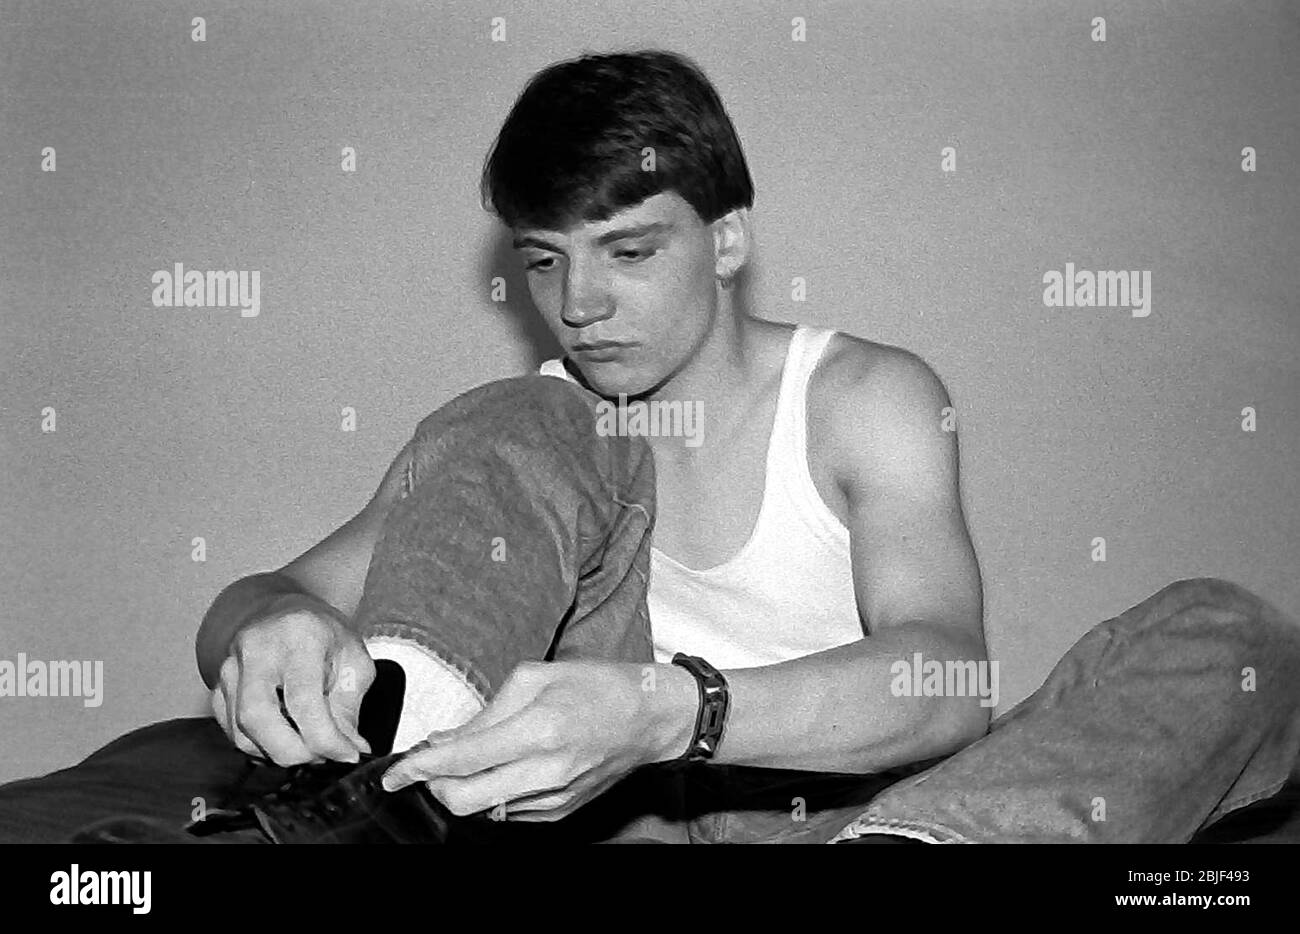 Ritratto di un ragazzo caucasico adolescente, di 17 anni, indossando un giubbotto, seduto allacciando i lacci della scarpa che indossa a Manchester, uk,1984. Foto Stock